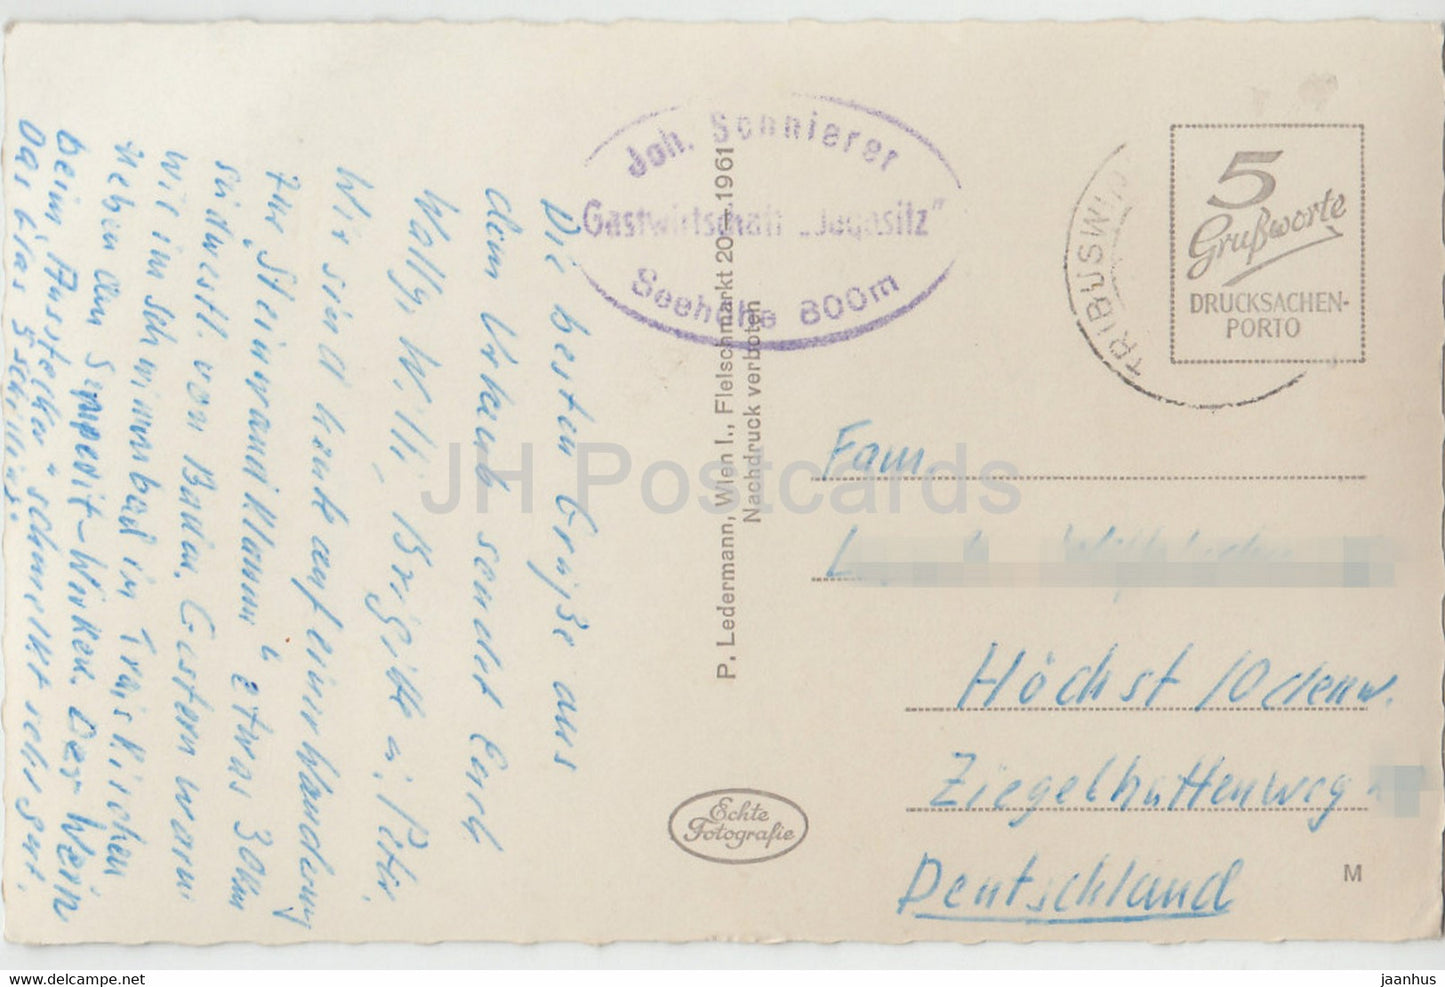 Steinwandklamm - old postcard - Austria - used